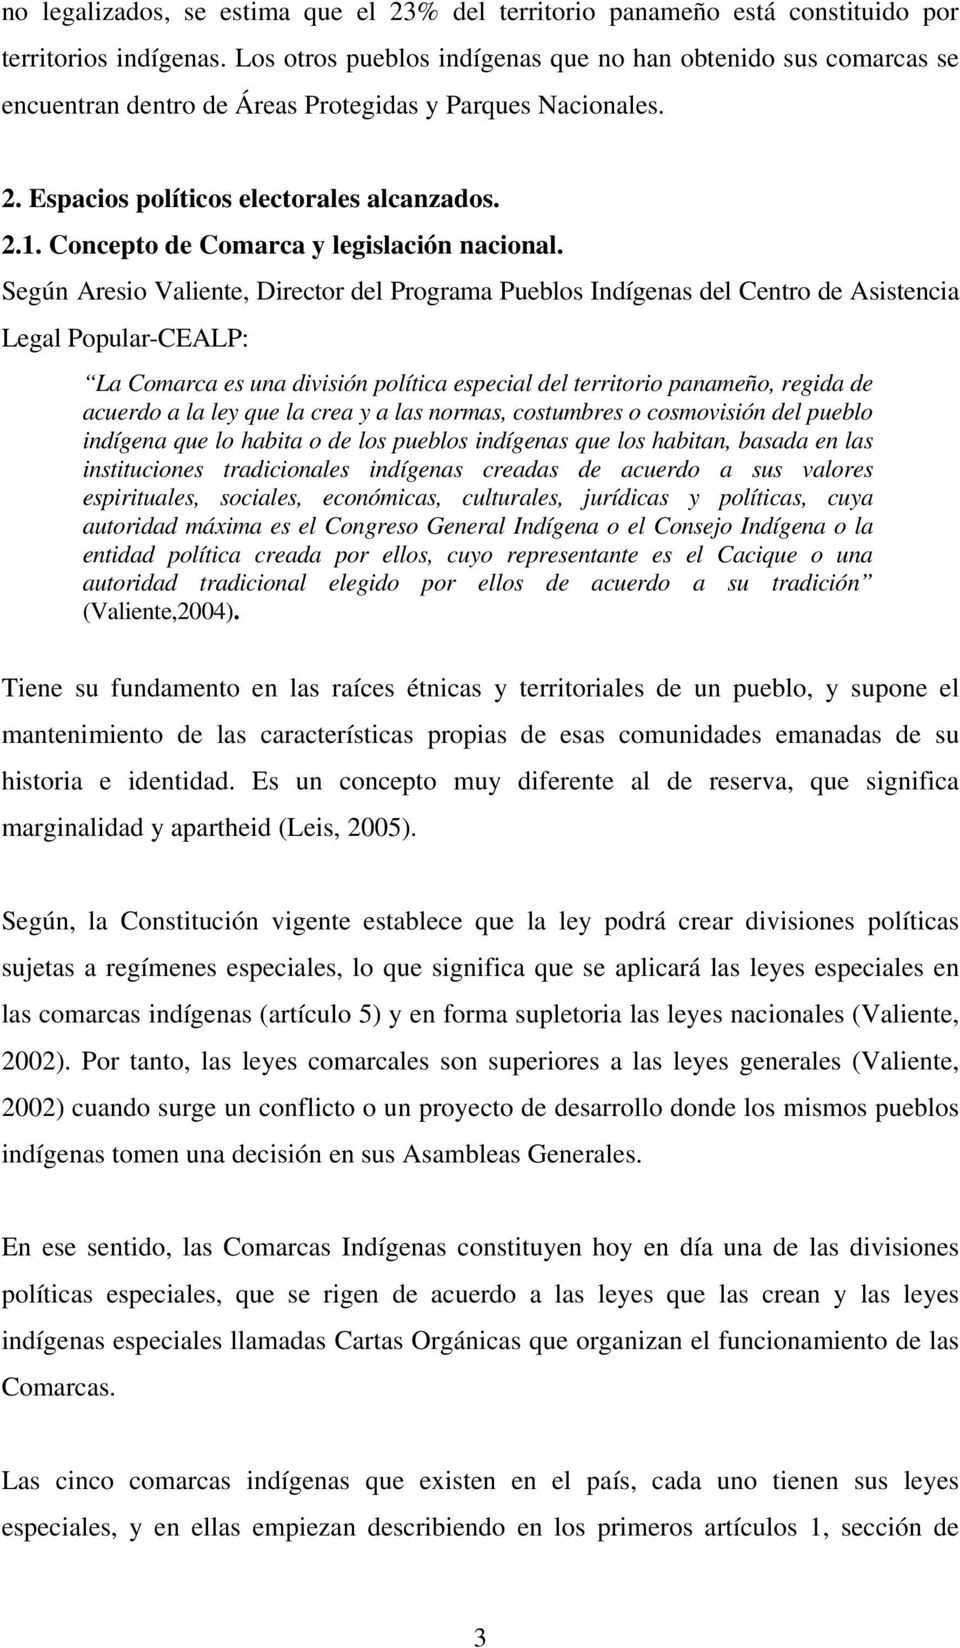 Concepto de Comarca y legislación nacional.